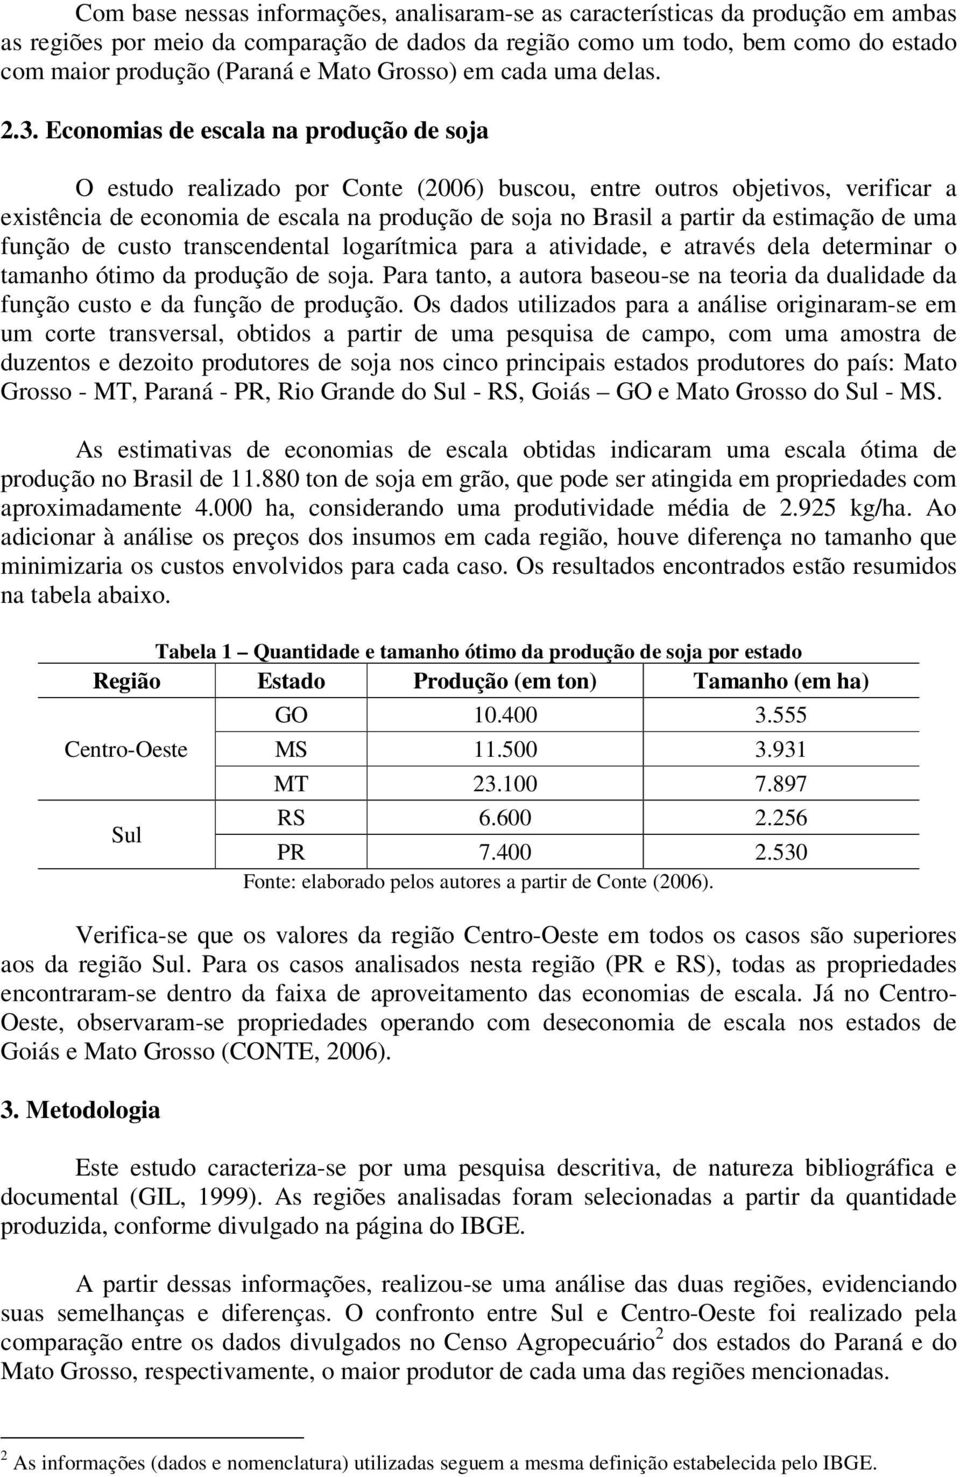 Economias de escala na produção de soja O estudo realizado por Conte (2006) buscou, entre outros objetivos, verificar a existência de economia de escala na produção de soja no Brasil a partir da